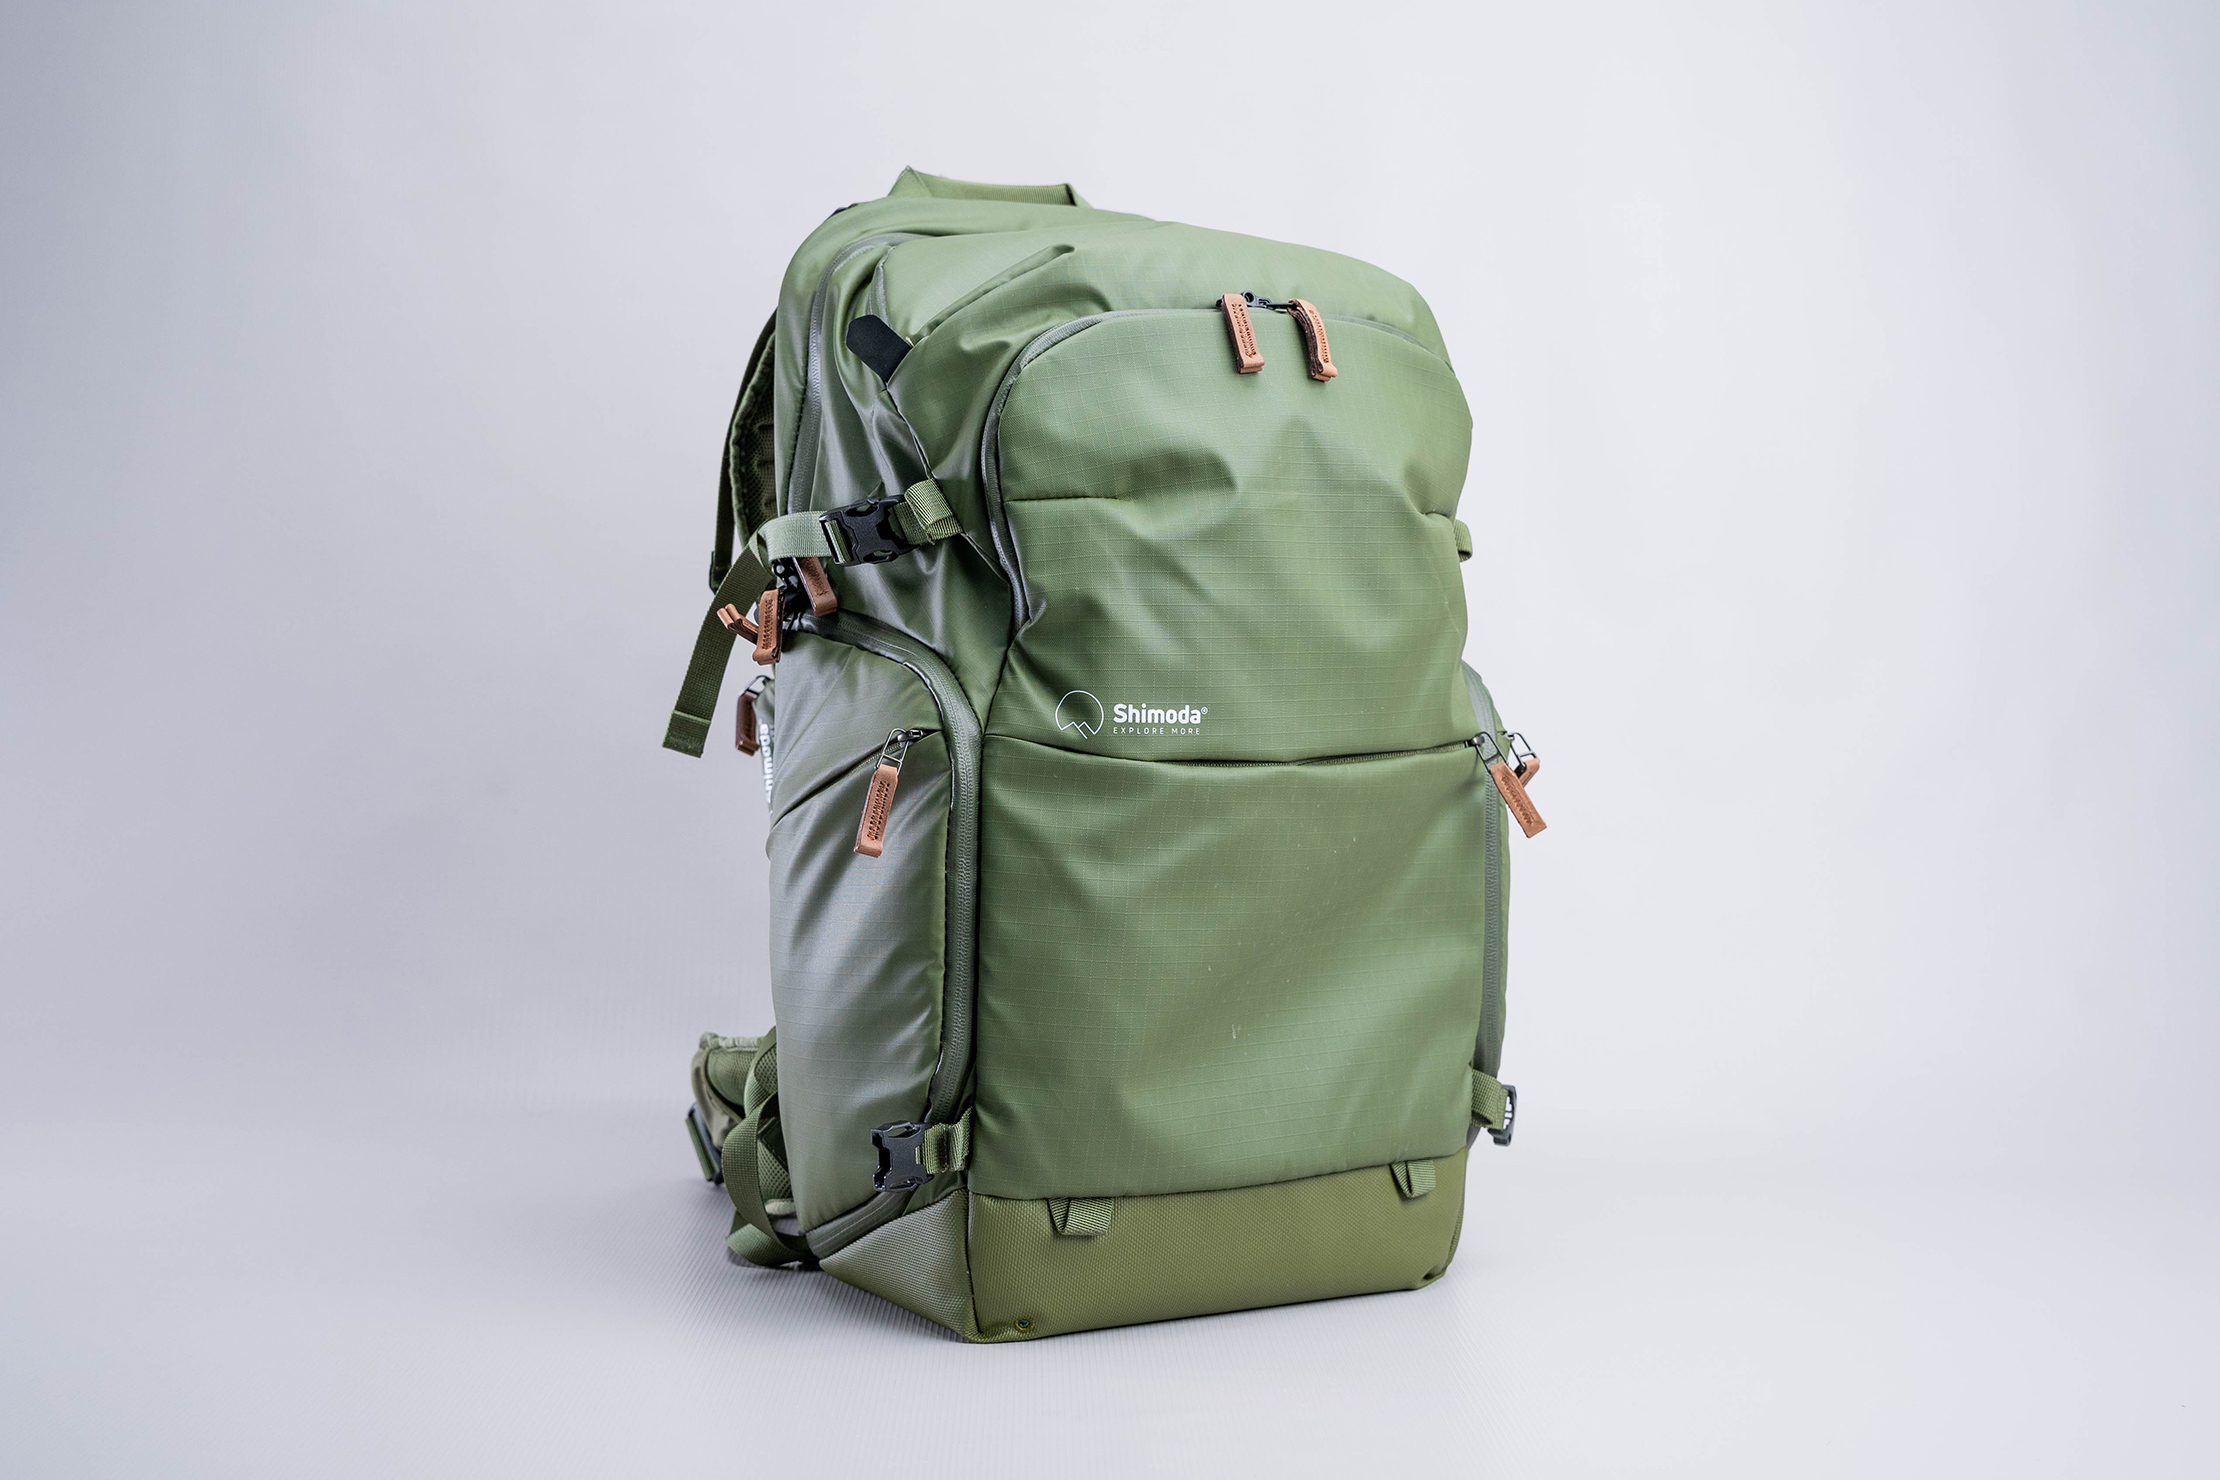 Shimoda Explore V2 35 Backpack Full